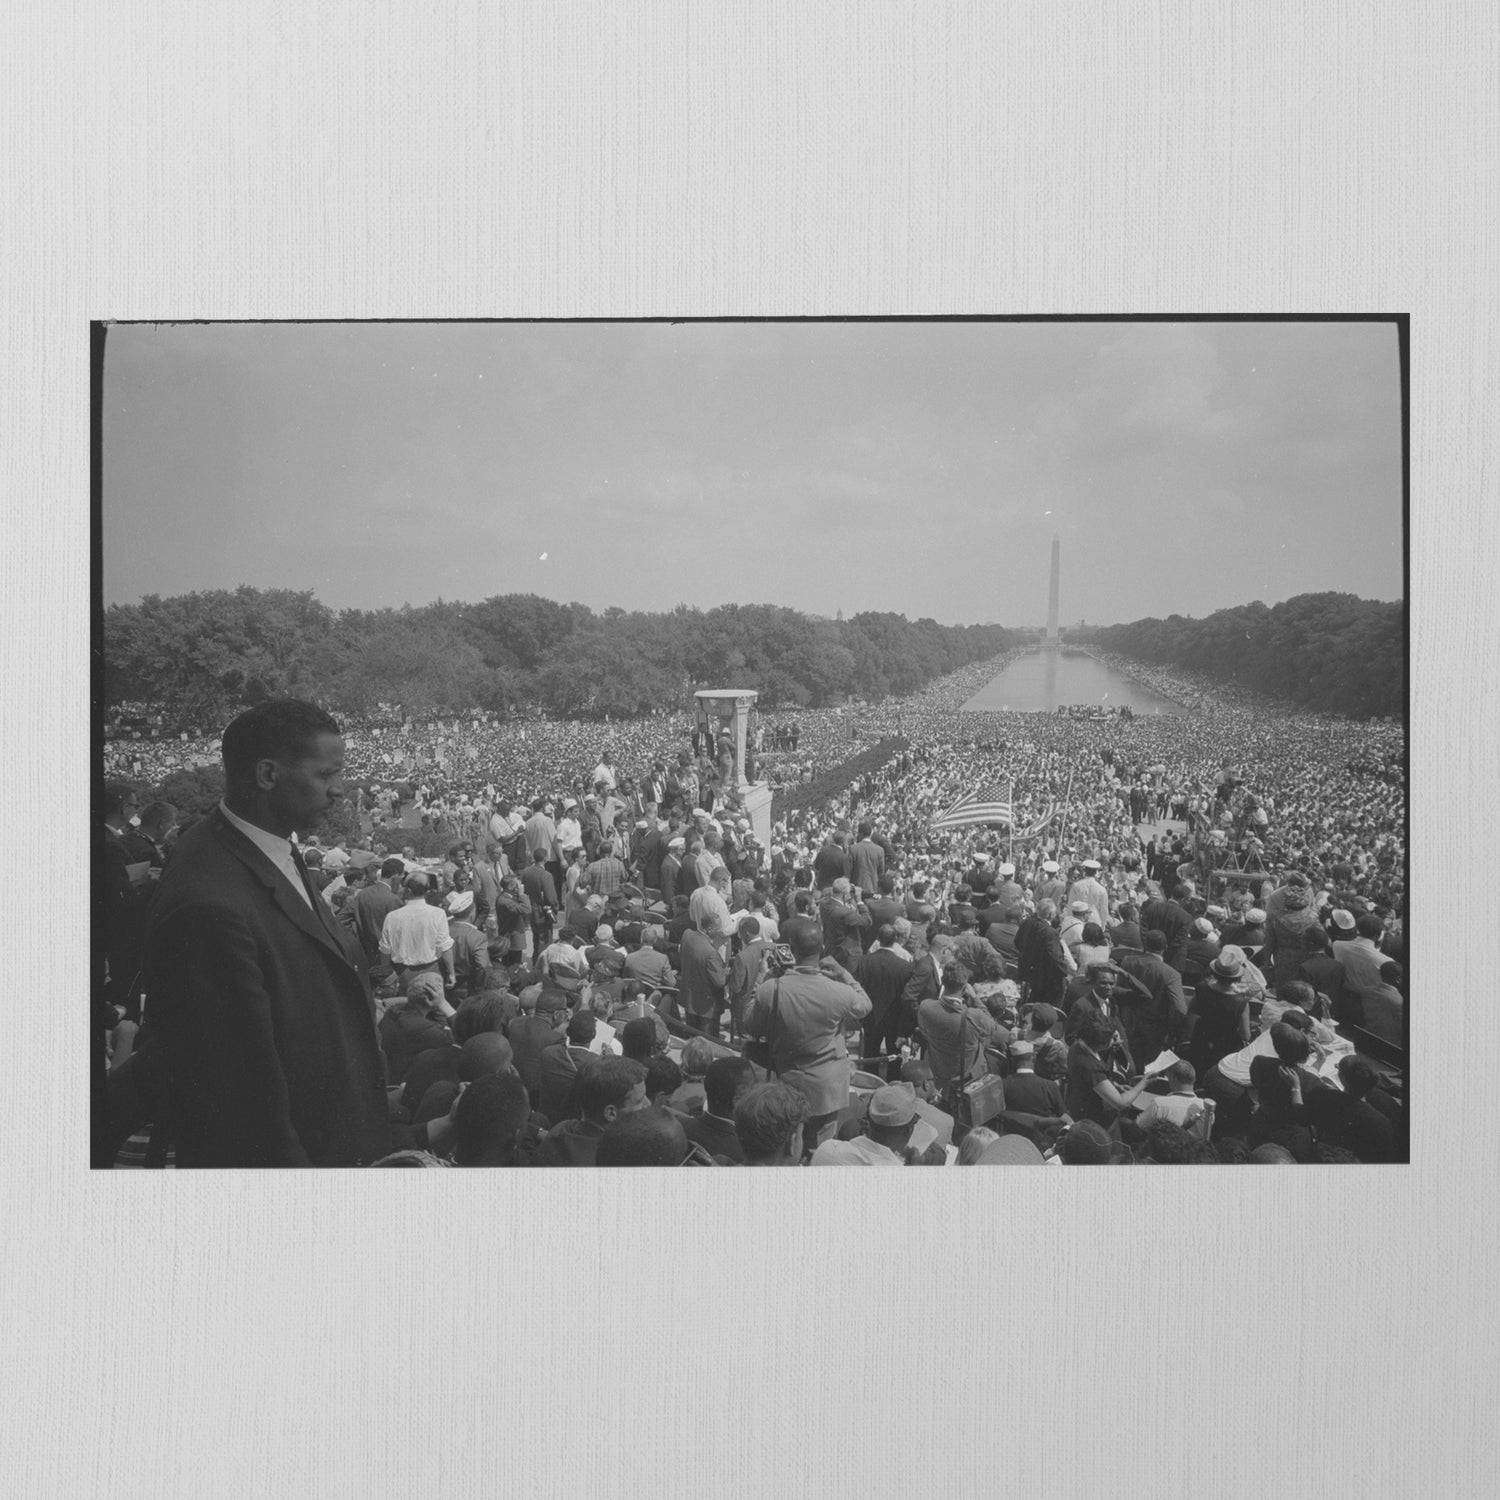 The March on Washington by Warren K. Leffler, 1963